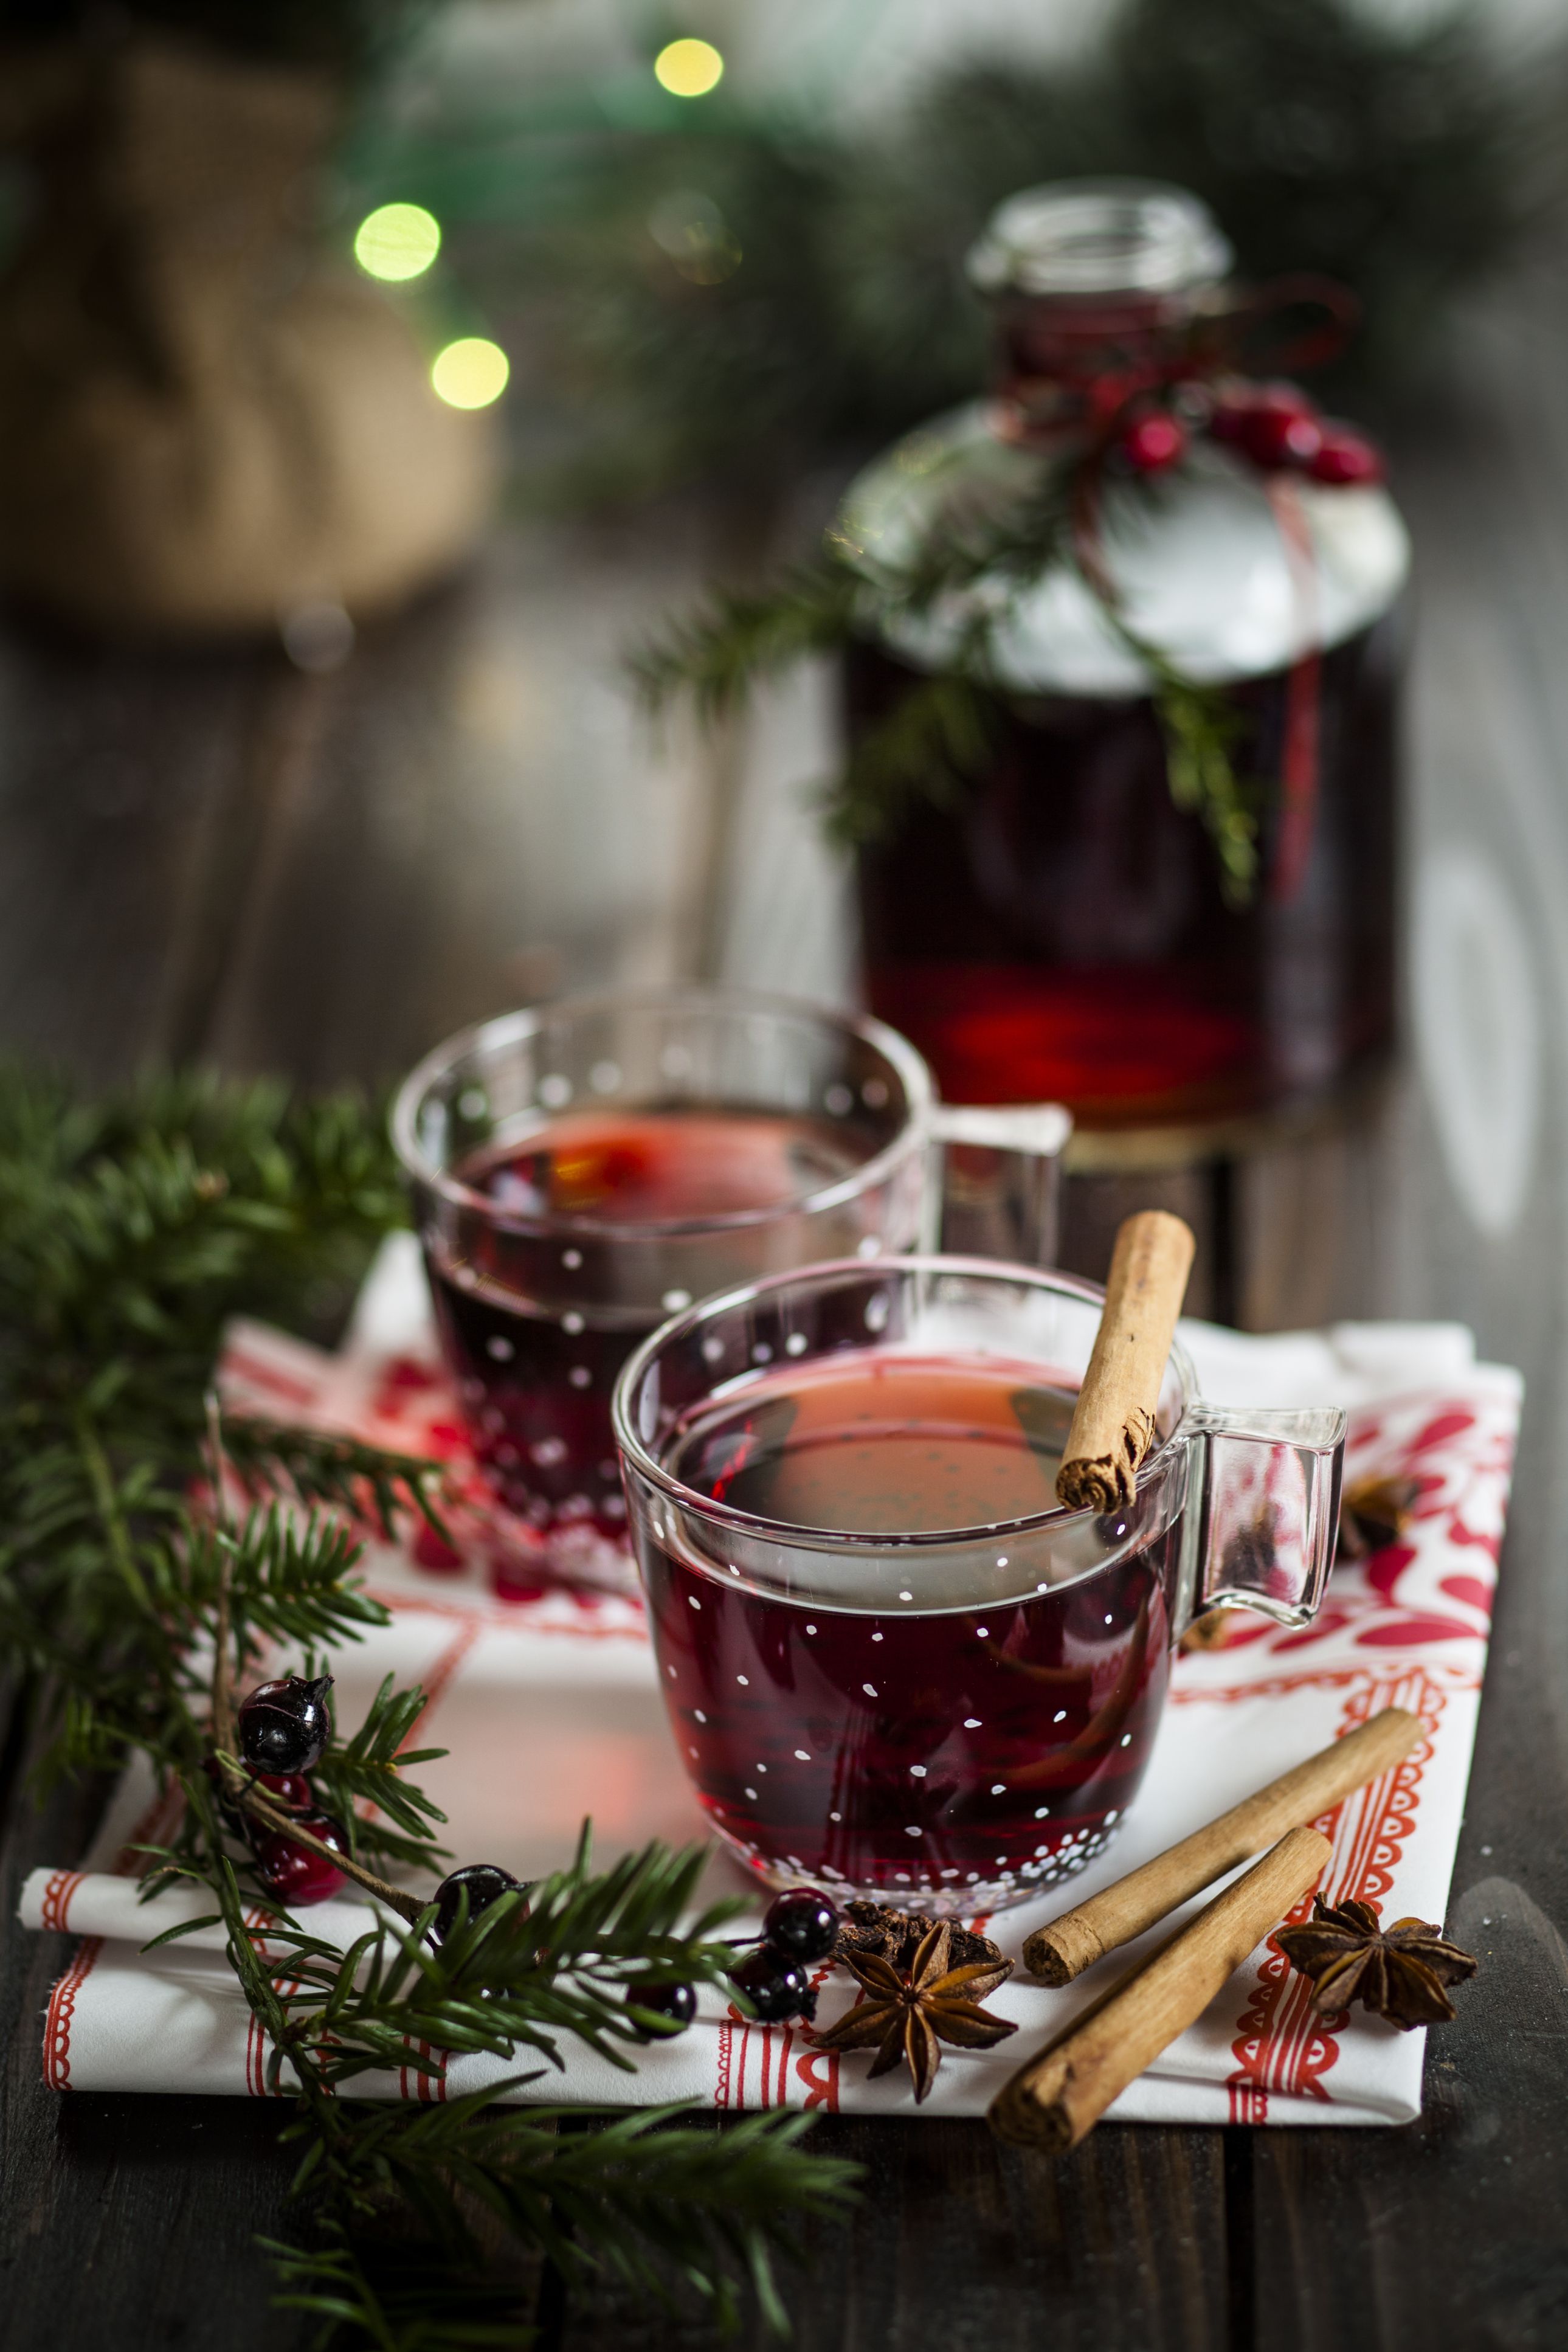 Italian Mulled Wine Recipe: a Festive Winter Drink